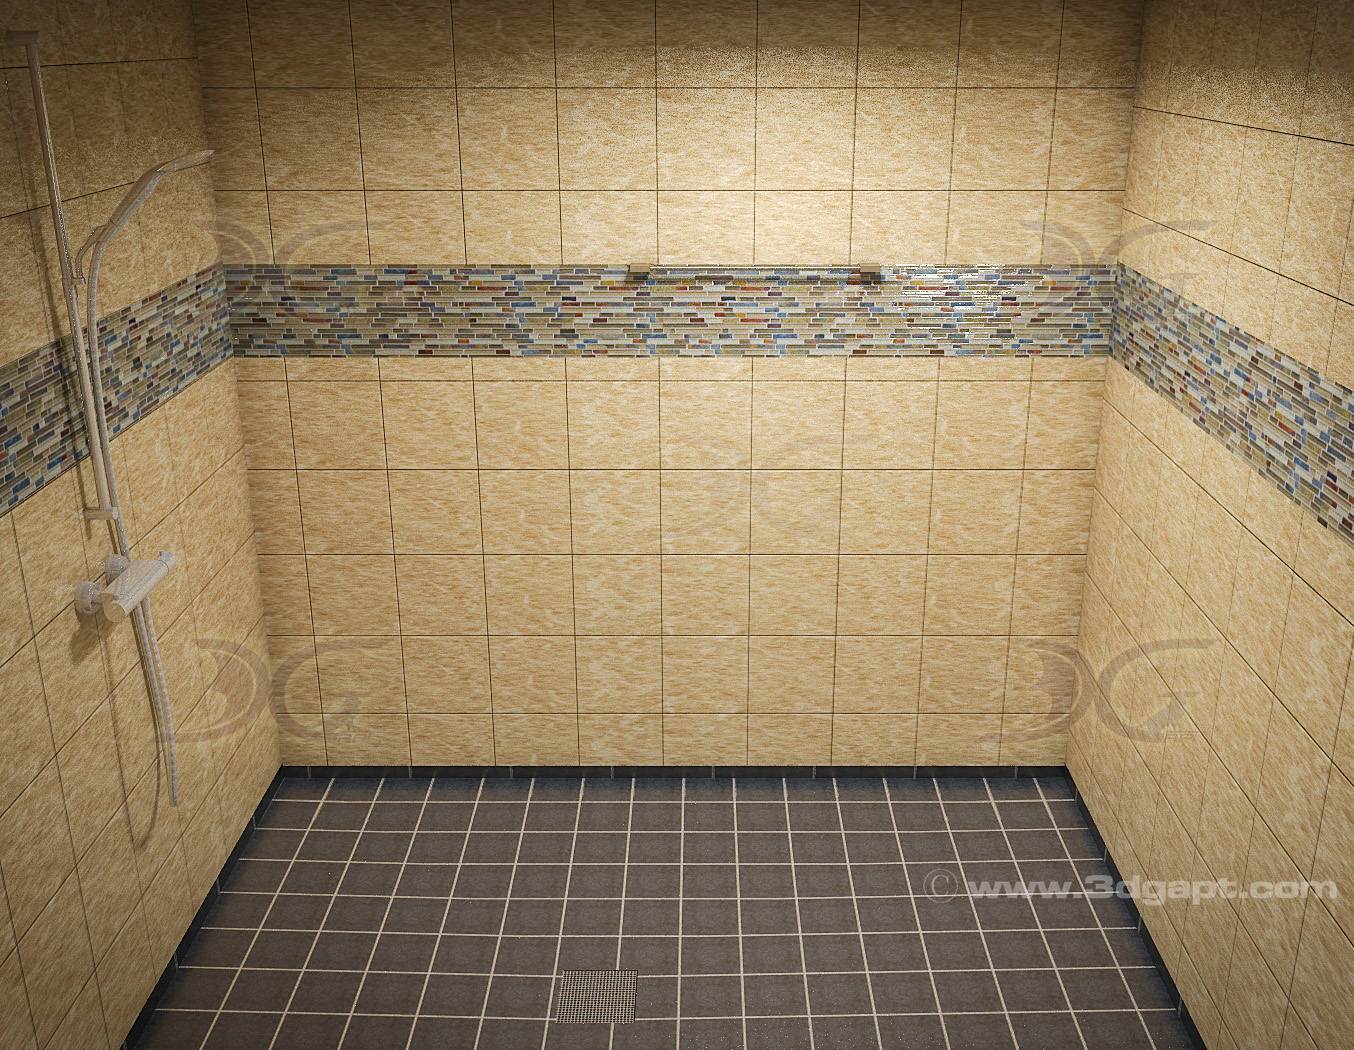 Architecture Interior Container Bathrooms0020